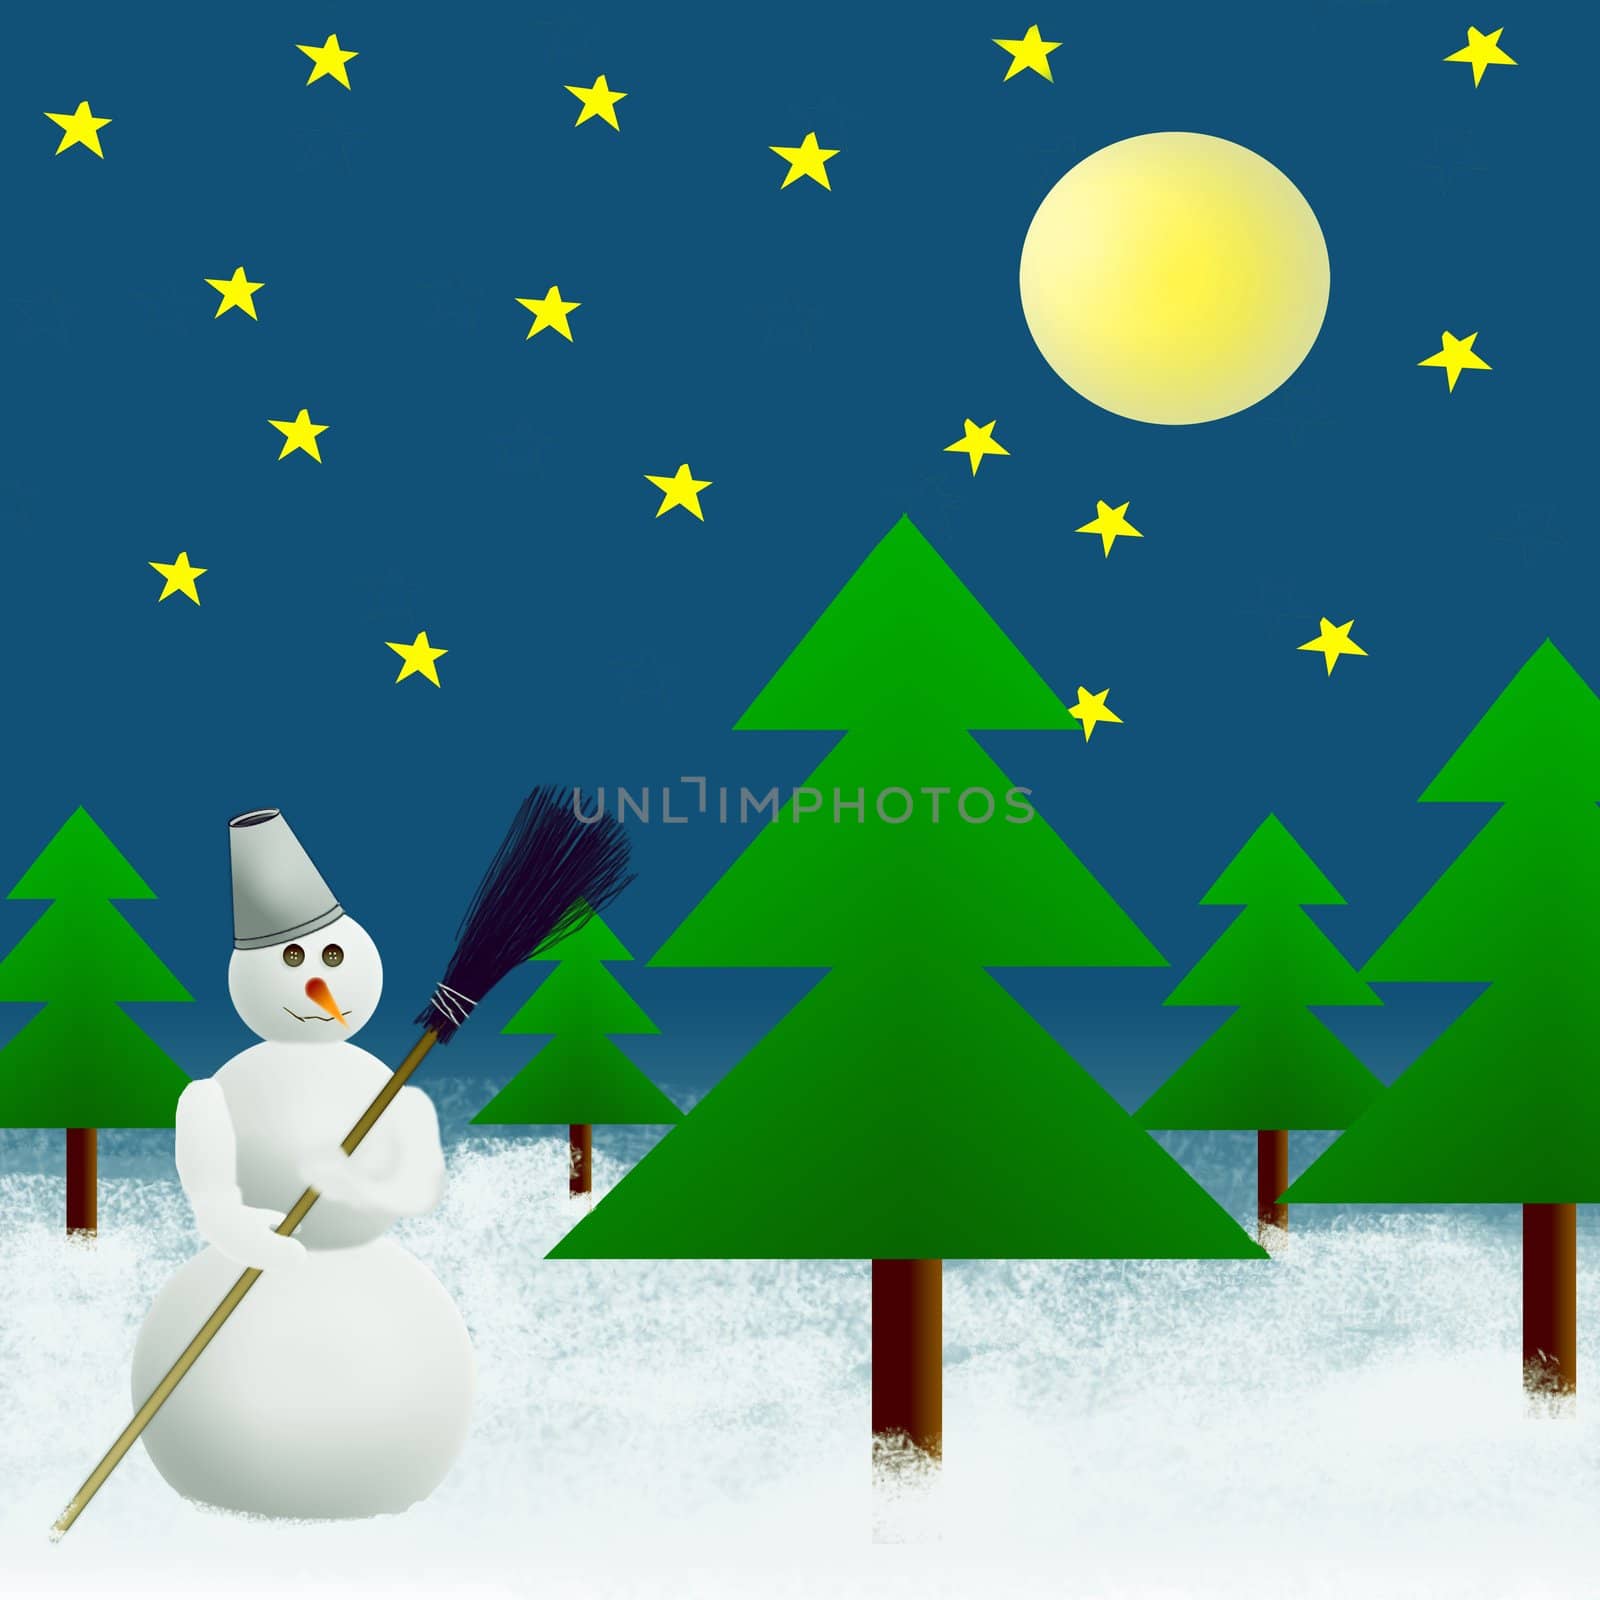 Snowman in winter's wood